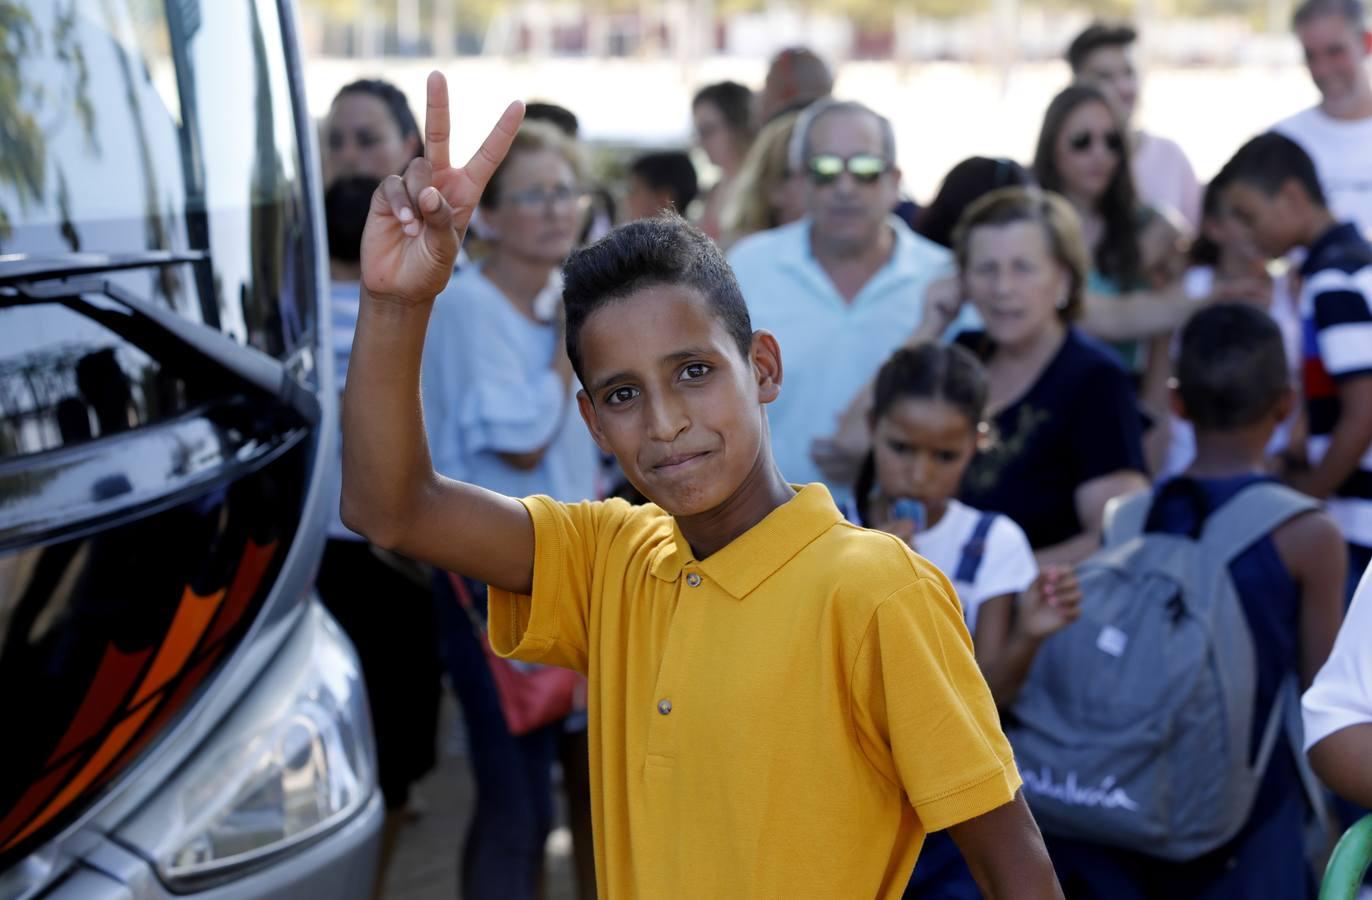 La despedida de los niños saharauis, en imágenes